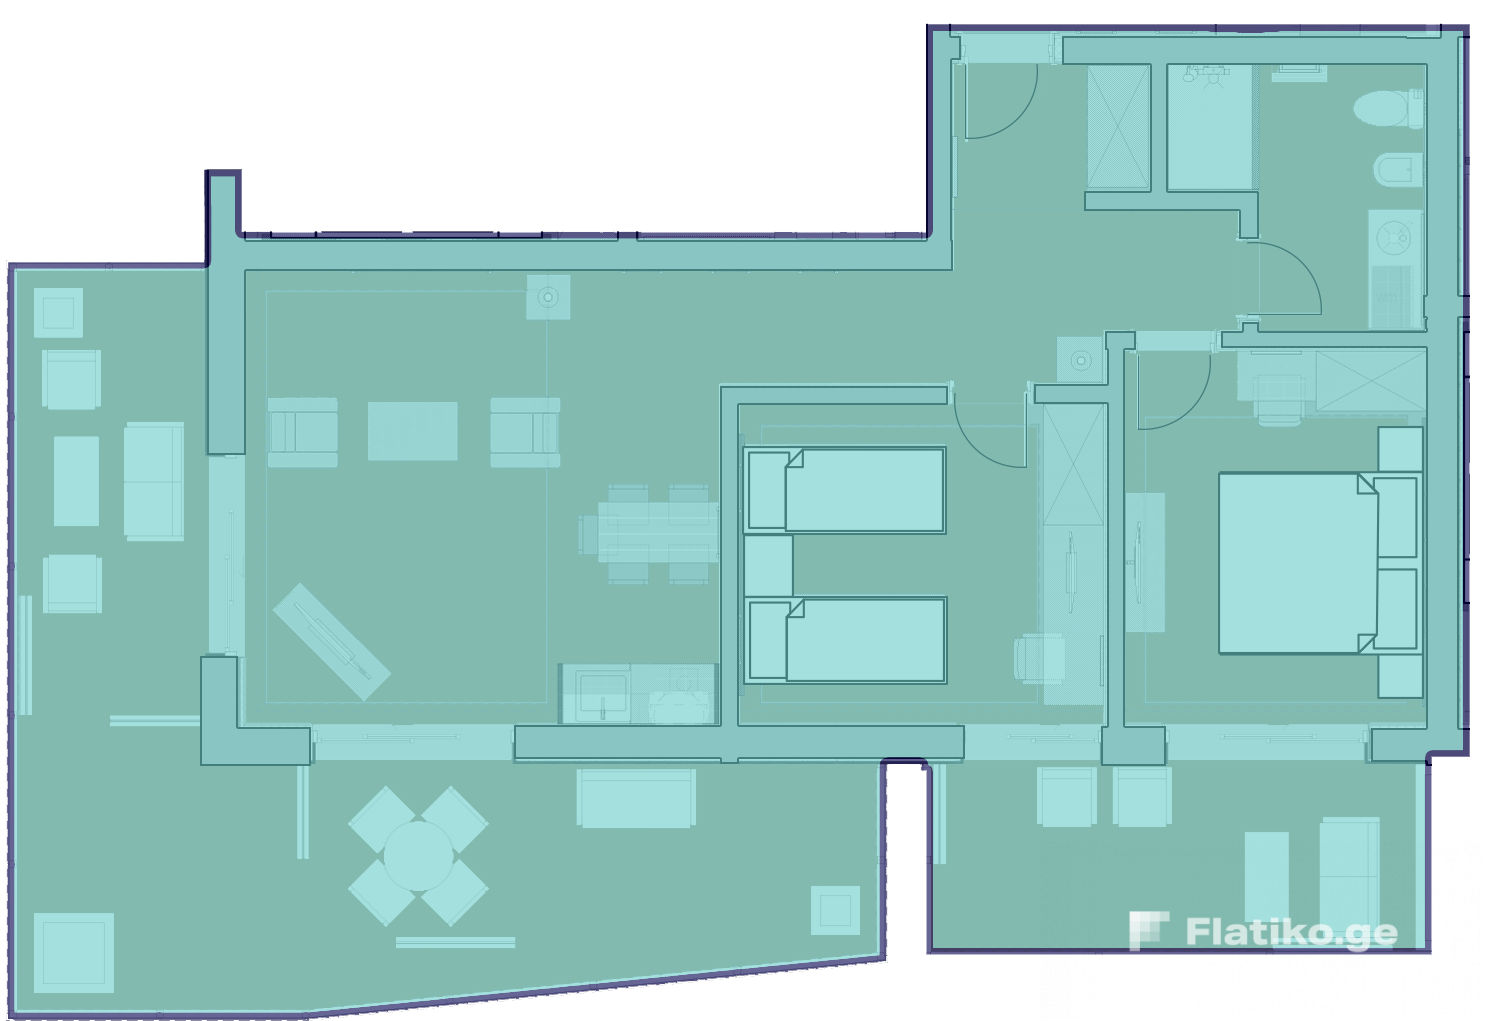 2-Bedroom Block 11